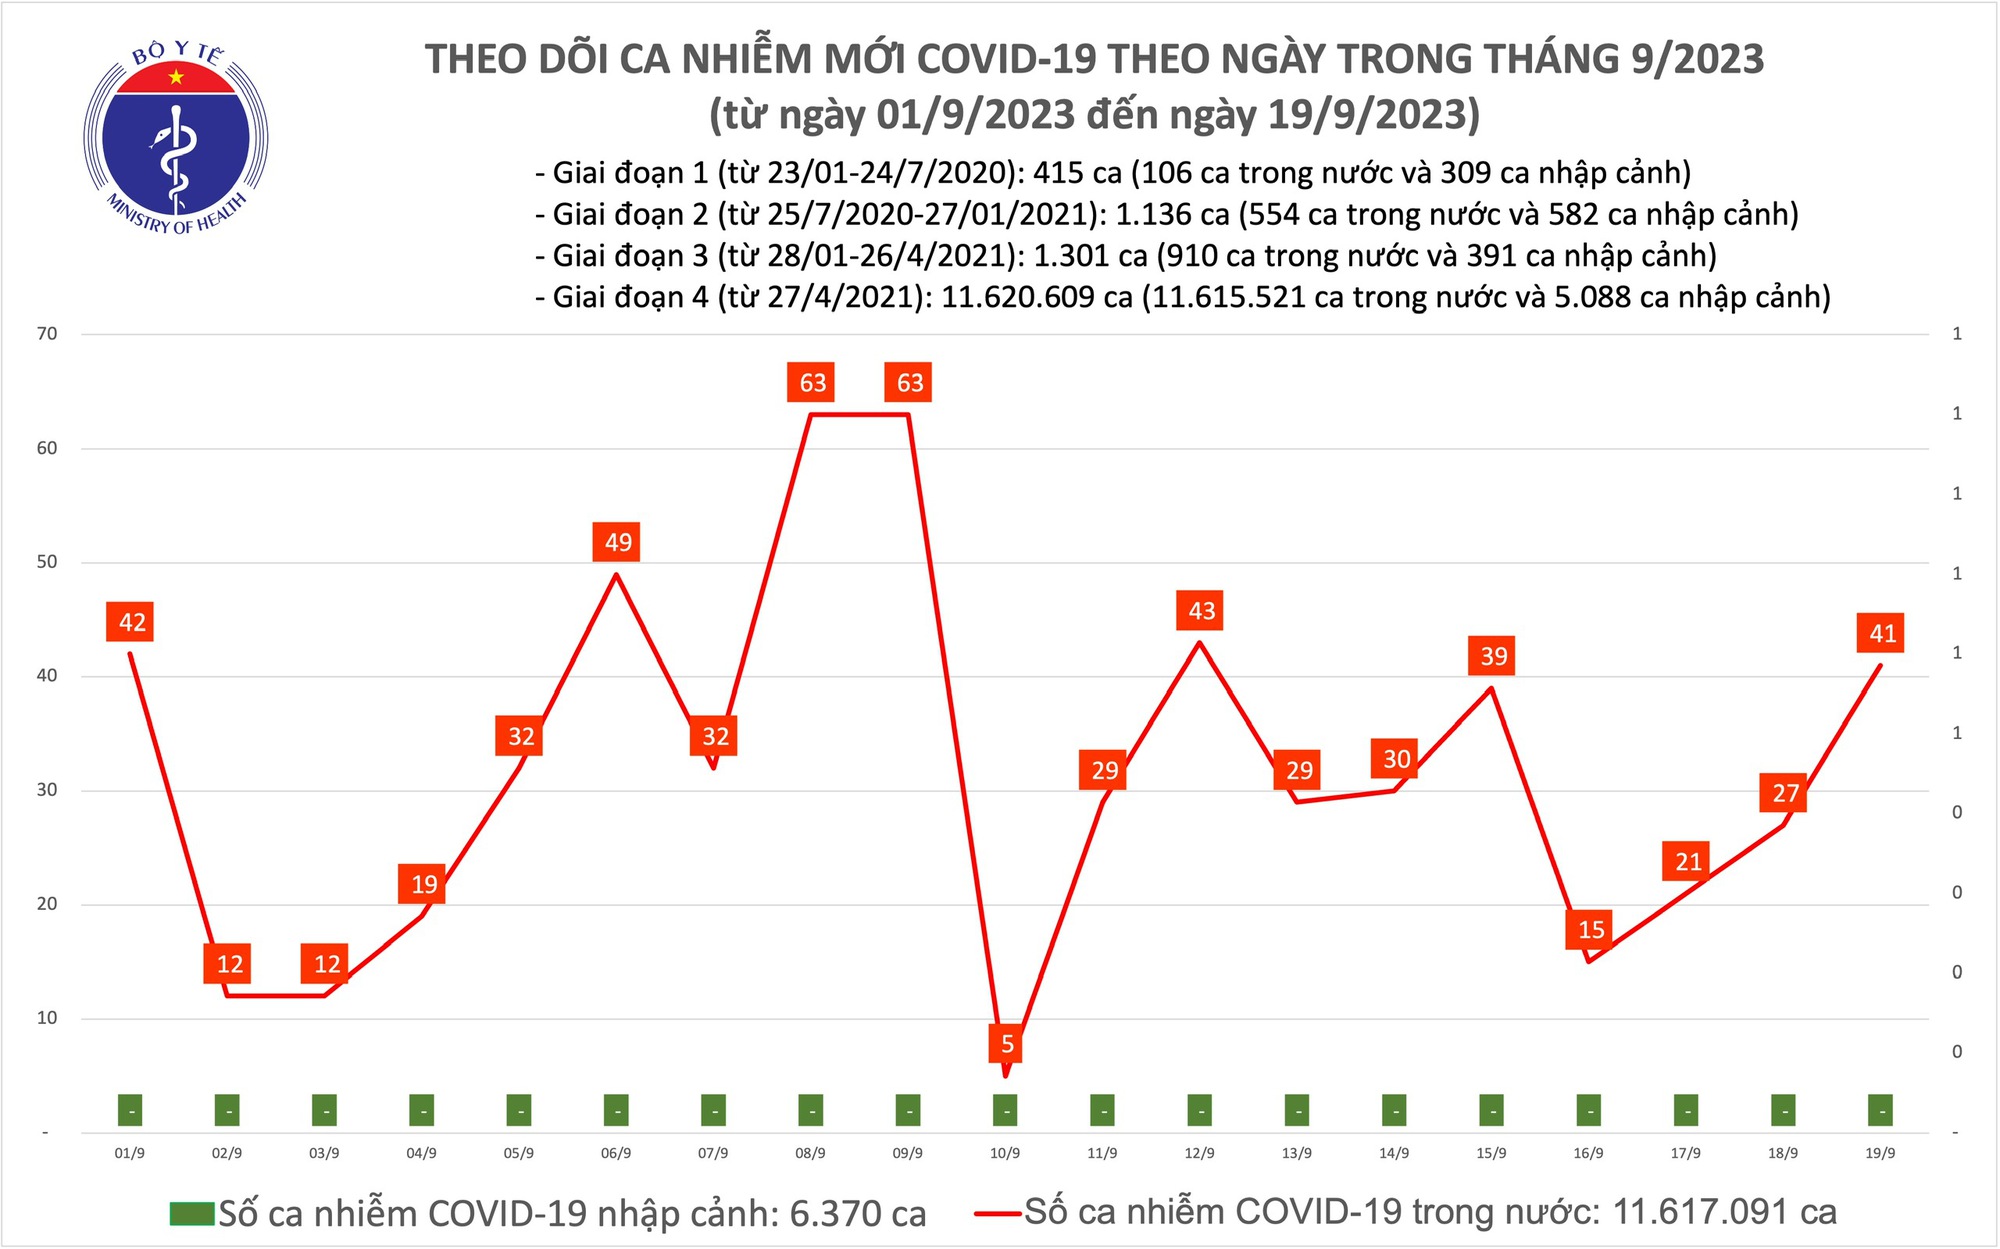 Ngày 19/9: Ca COVID-19 tăng lên 41, có 6 bệnh nhân thở oxy - Ảnh 1.